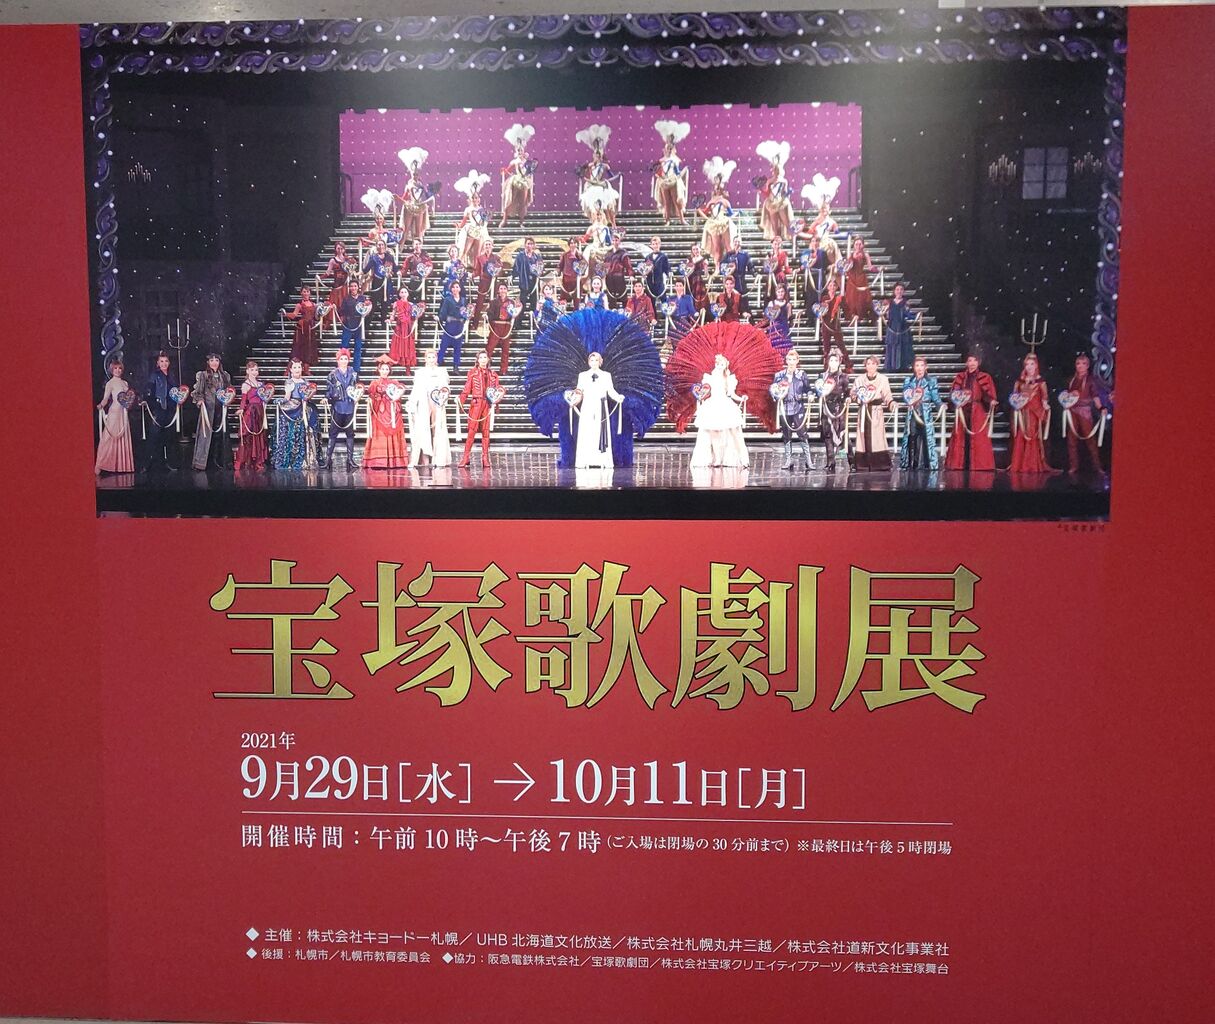 北国にタカラヅカがやってきた 札幌三越 宝塚歌劇展 本日開幕 28 たからづかふぁん